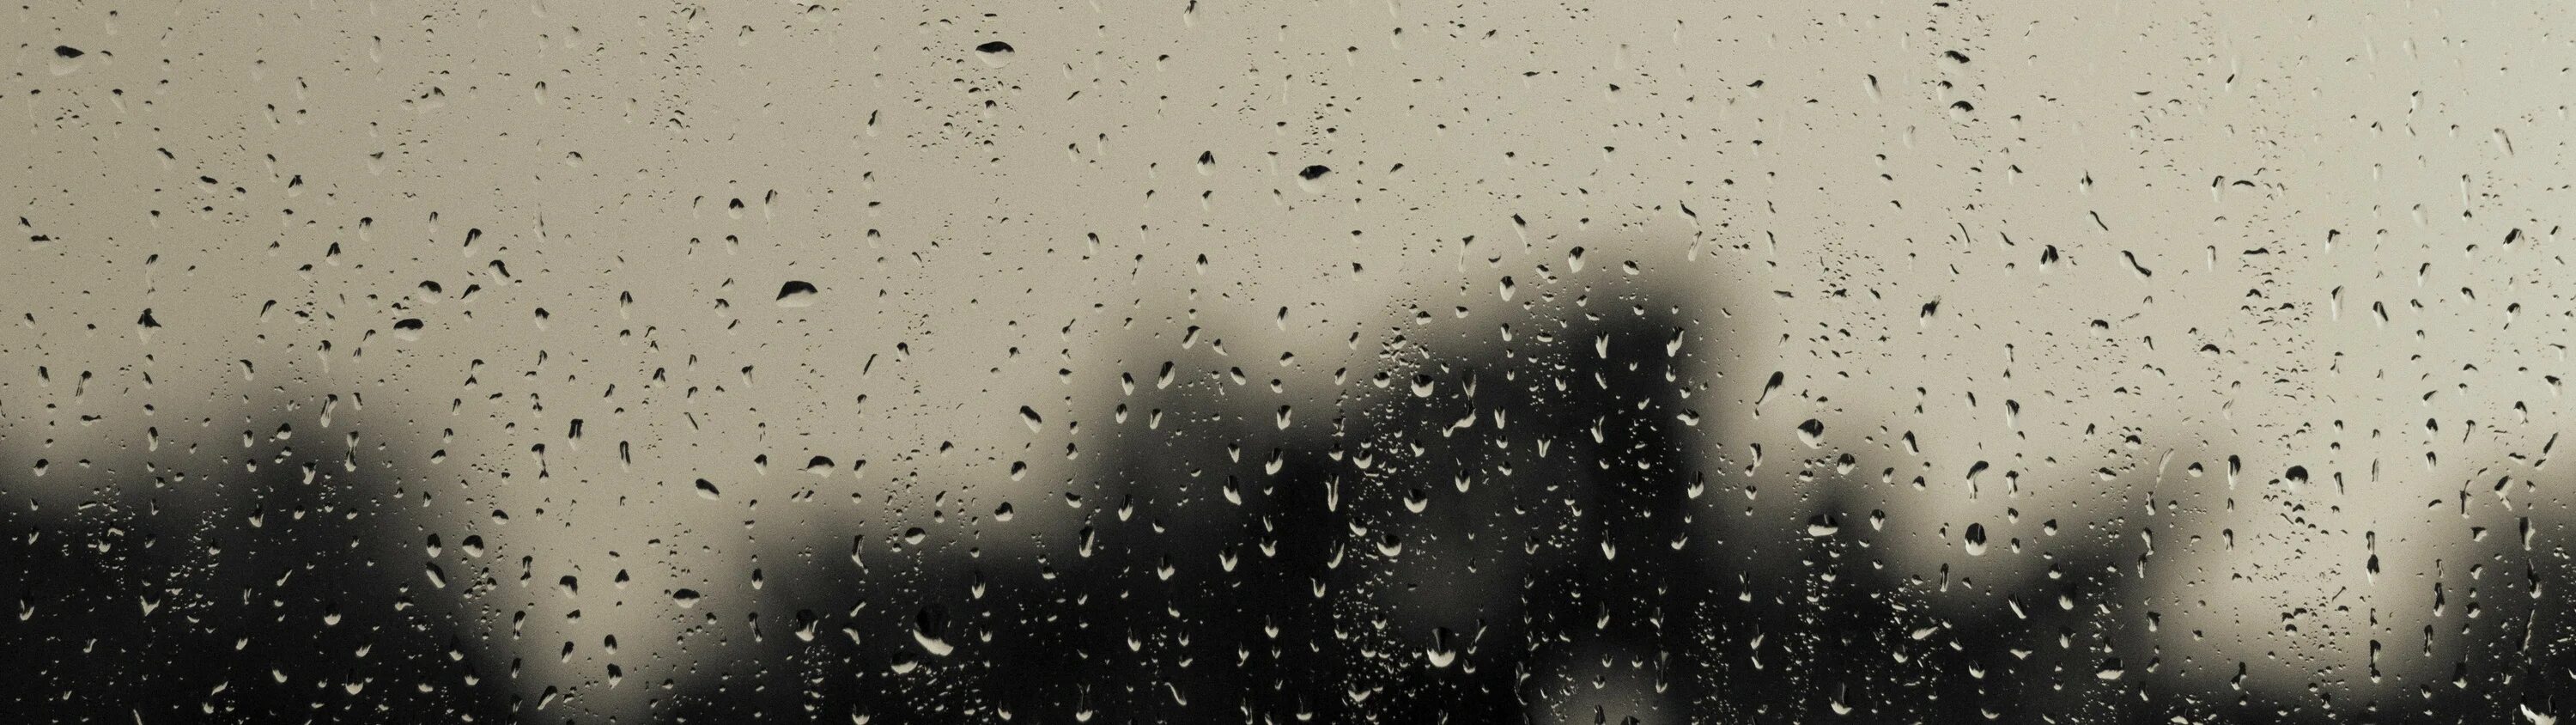 Org rain. Обои дождь. Тема капли дождя на экране. Капли дождя стекают по оружию. Двойной дождь.